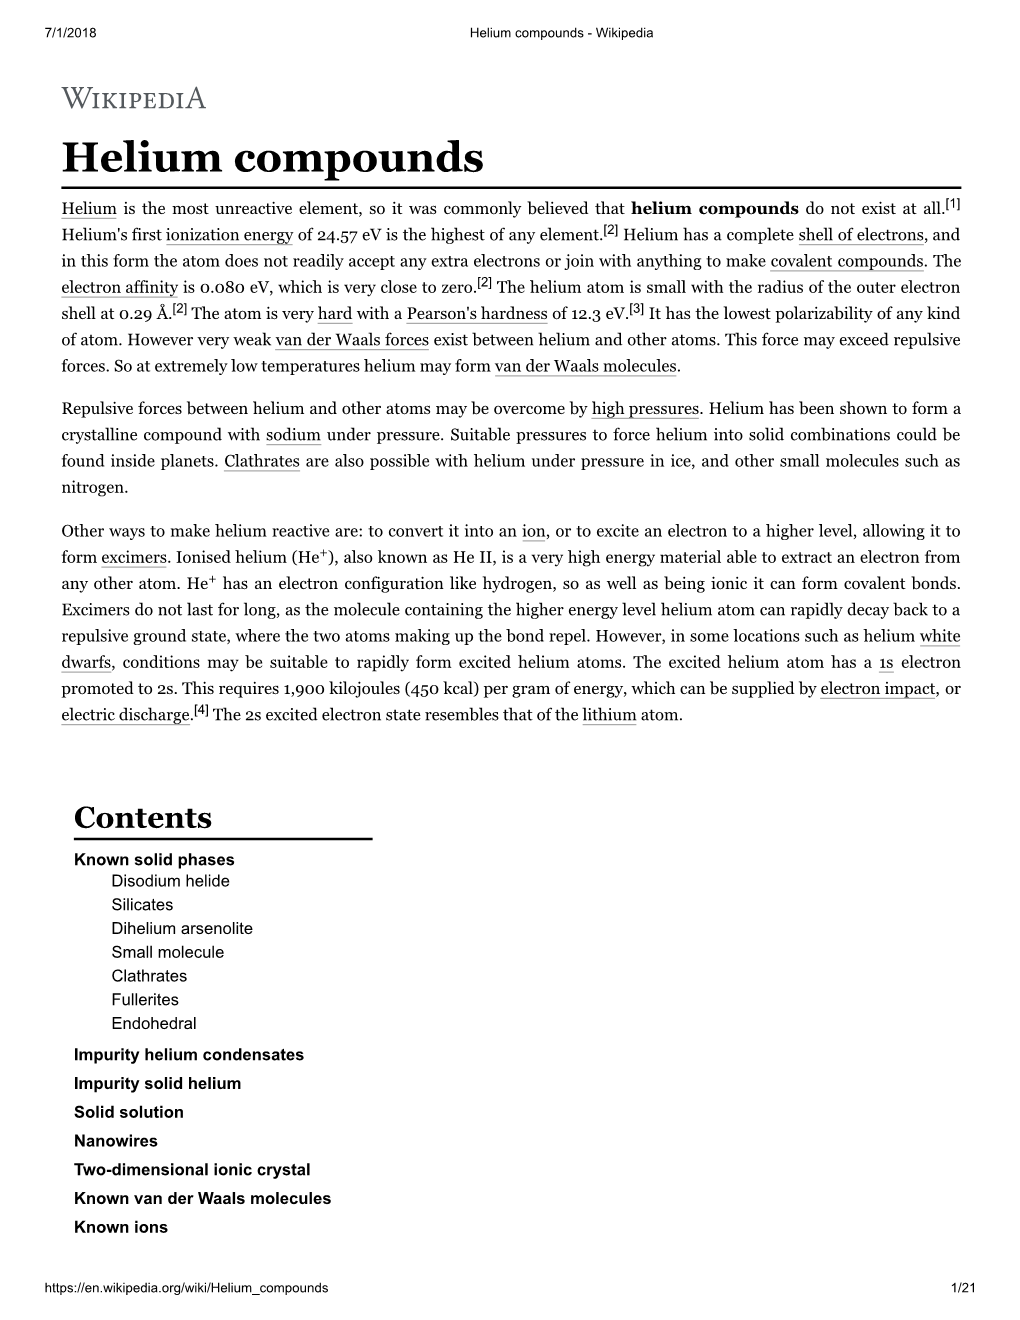 Helium Compounds - Wikipedia